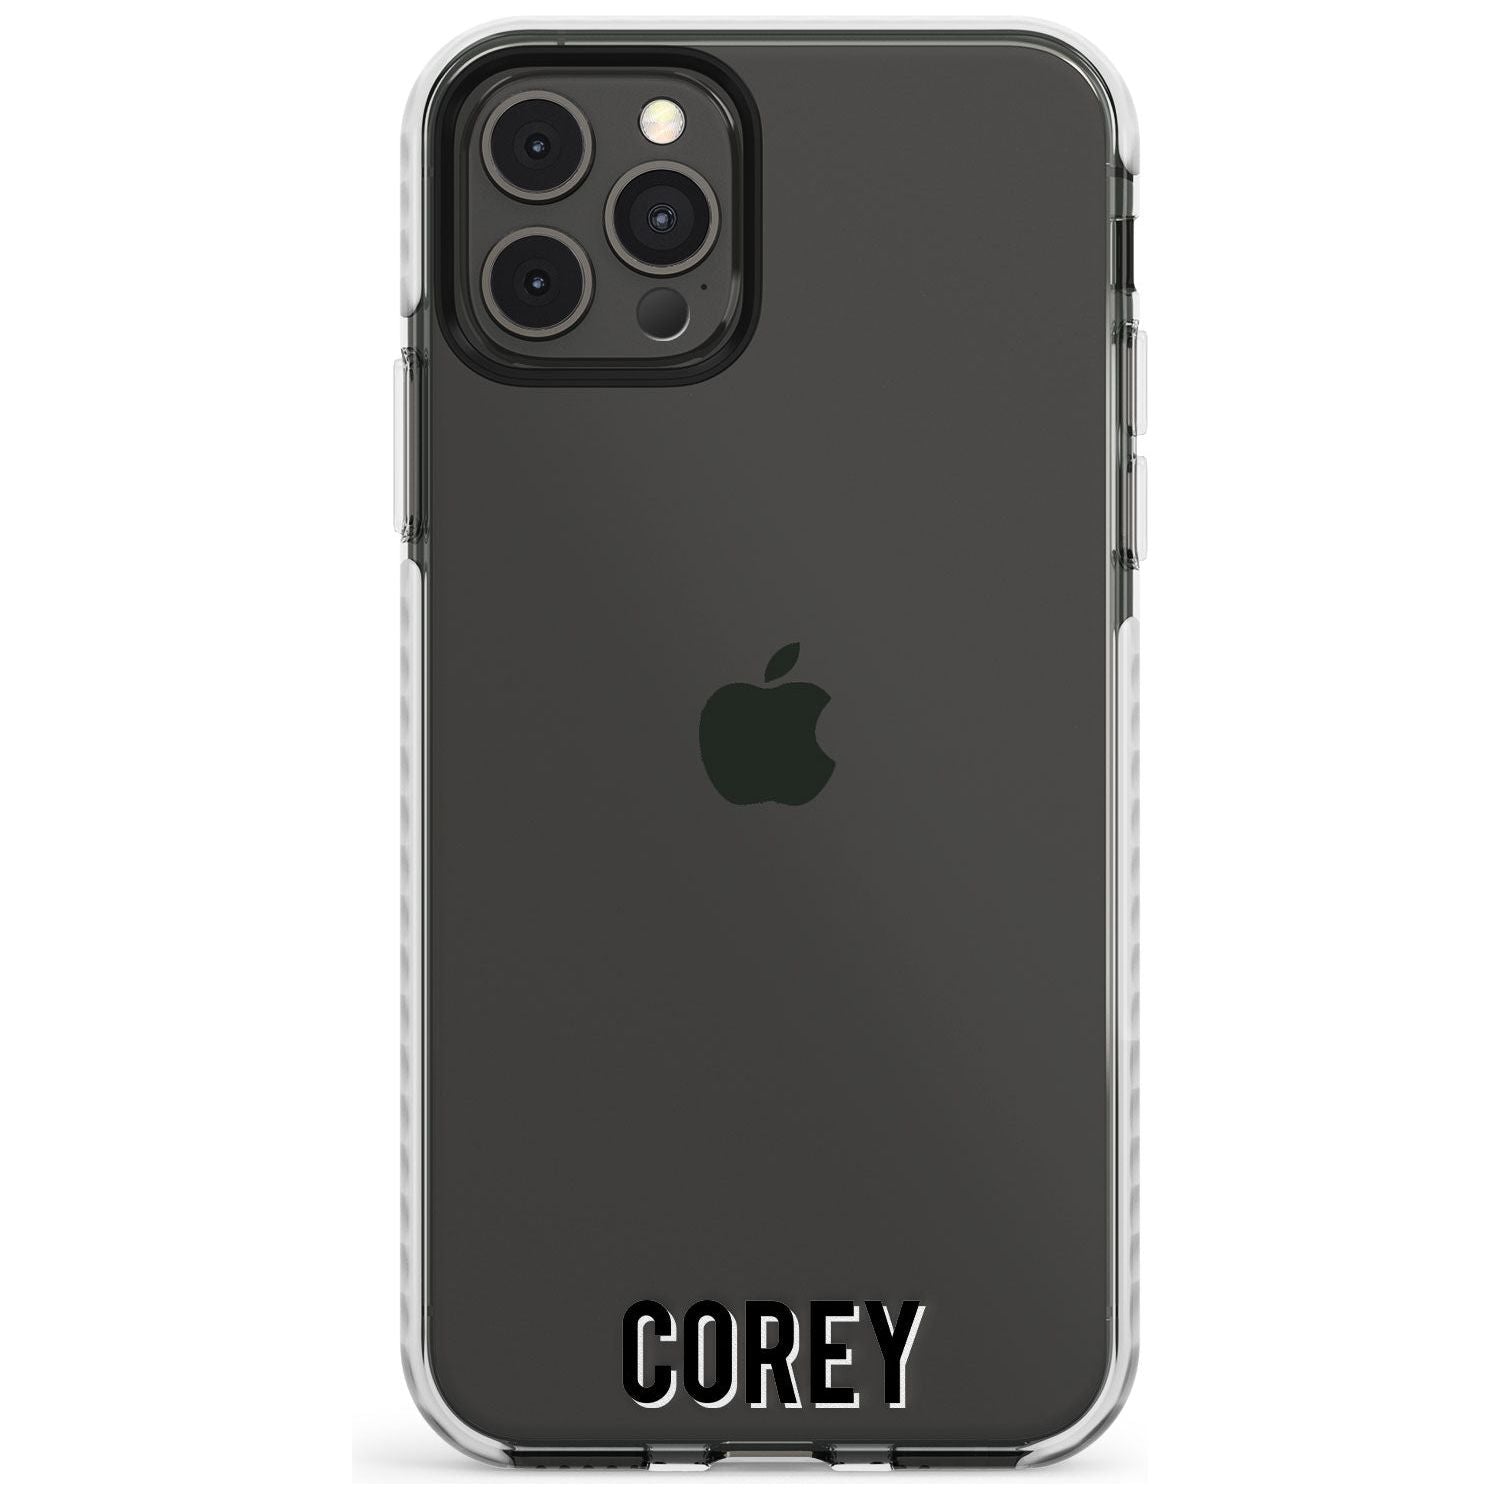 Custom Iphone Case 2A Slim TPU Phone Case for iPhone 11 Pro Max